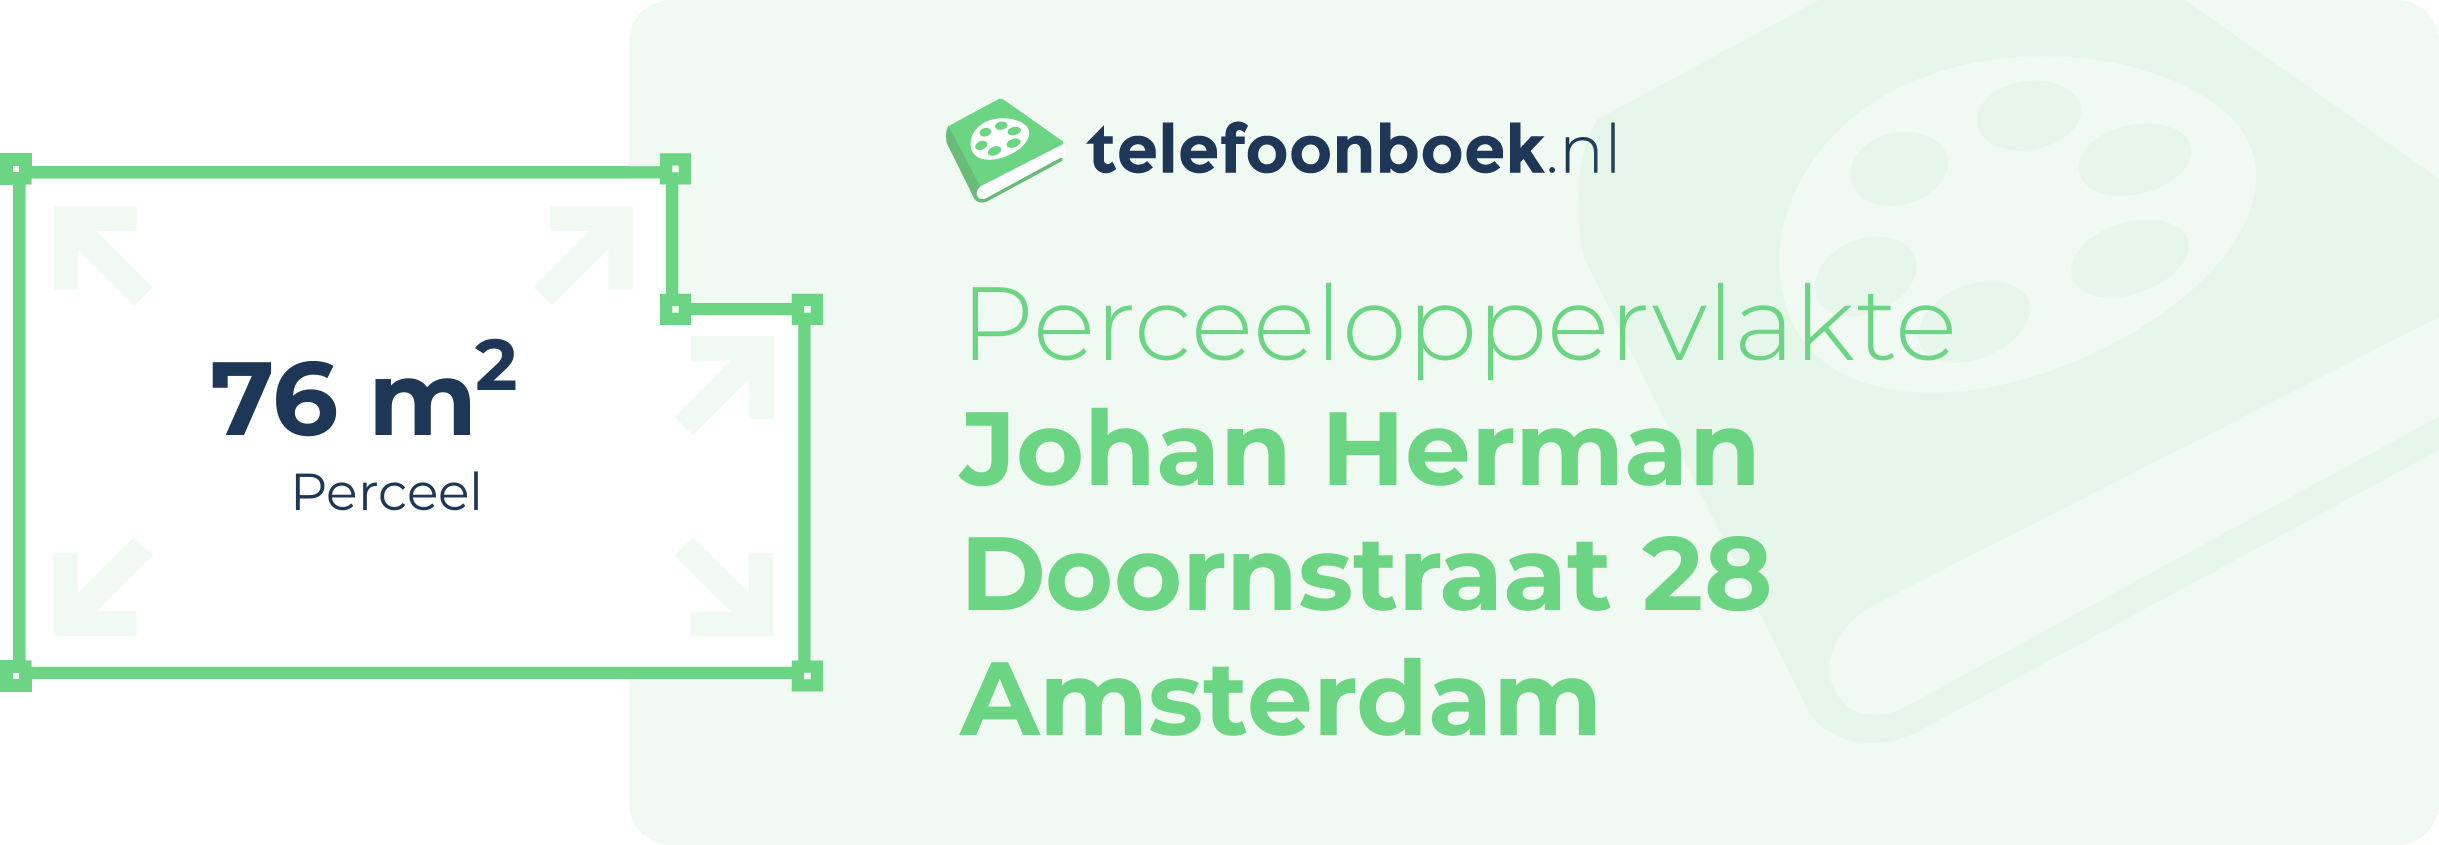 Perceeloppervlakte Johan Herman Doornstraat 28 Amsterdam